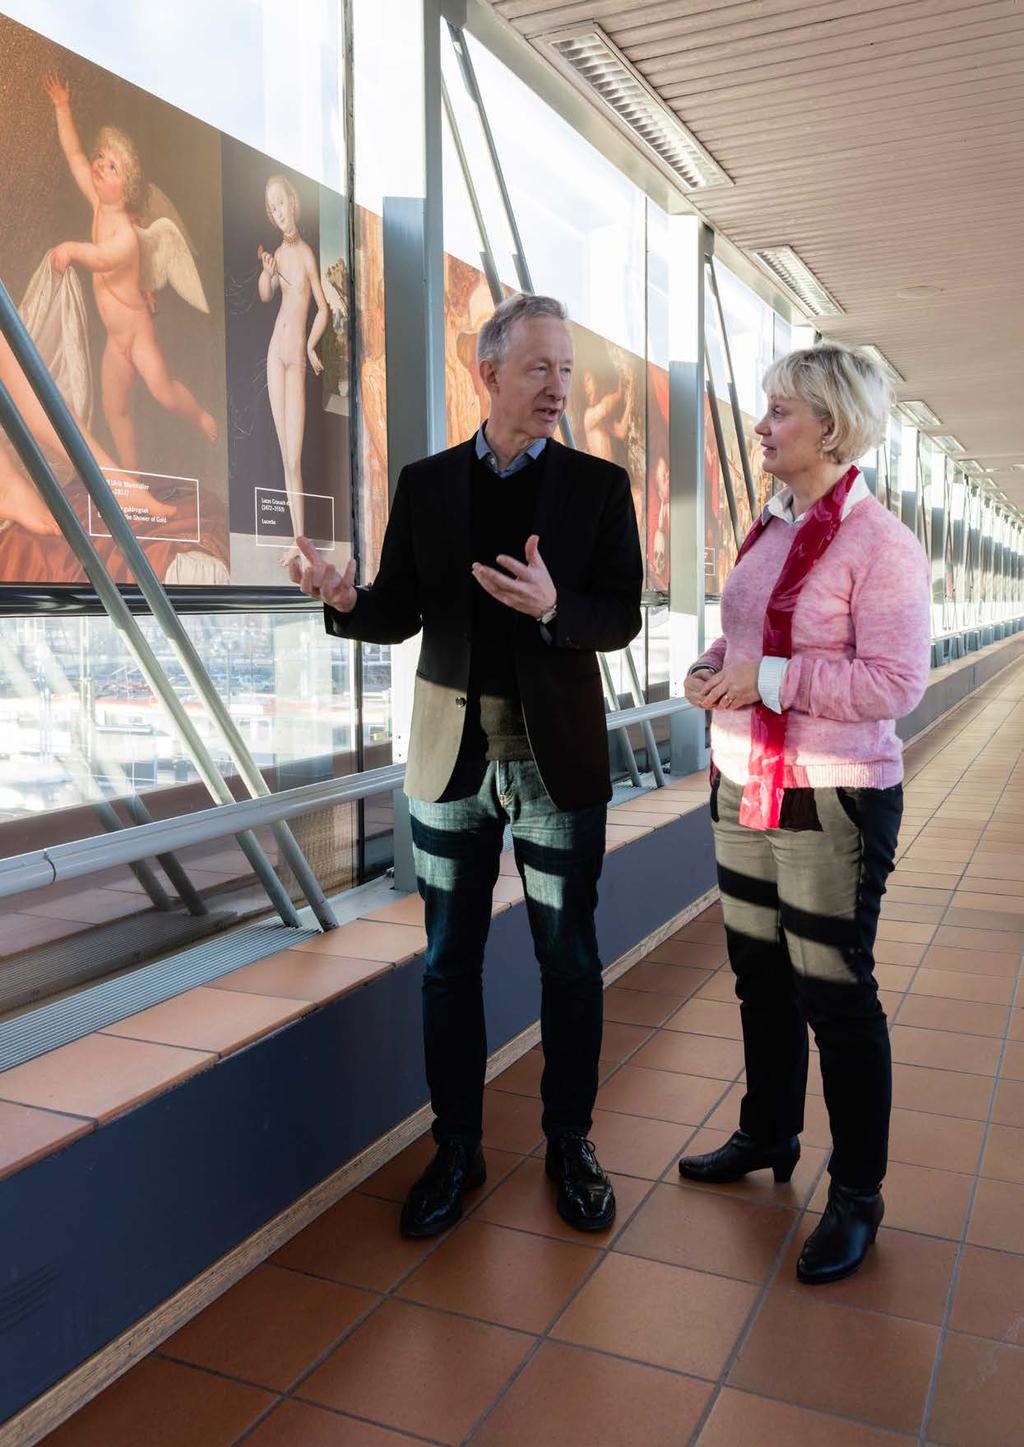 22 Konst förhöjer stationer Med utgångspunkt i ett antal konstverk ger Nationalmuseum och Jernhusen resenärer och besökare på stationer möjligheten att reflektera över frågor som handlar om staden